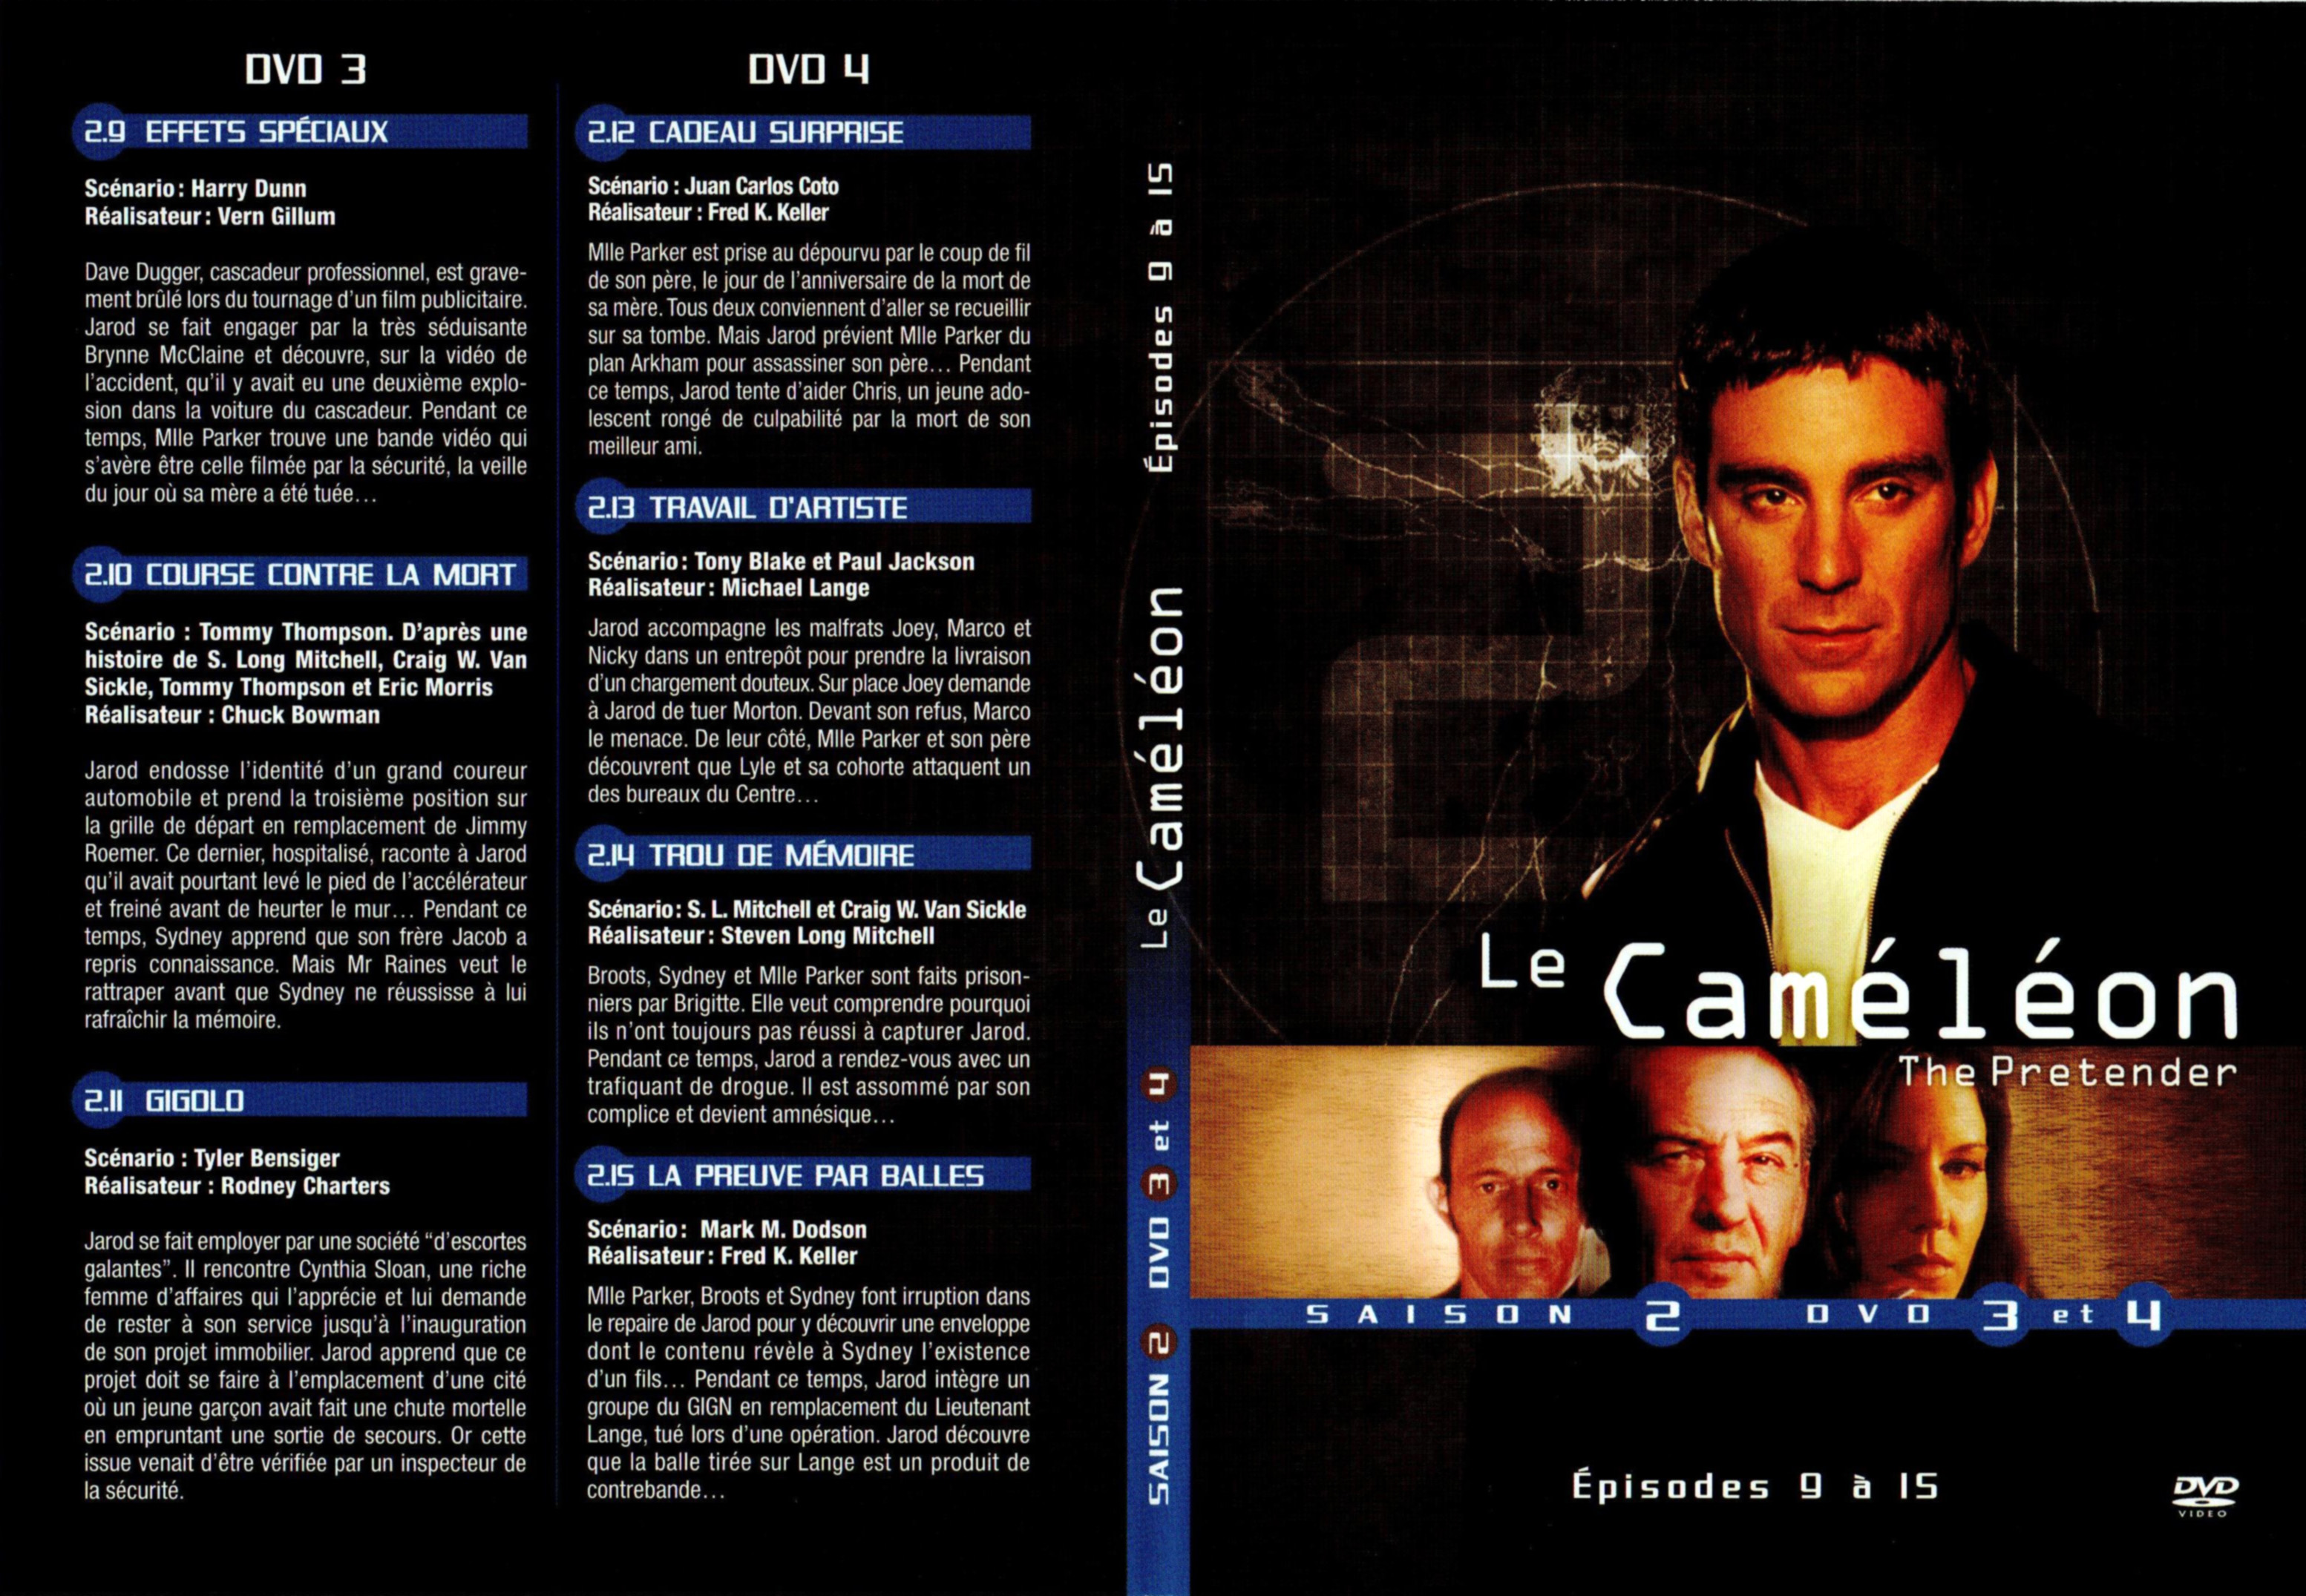 Jaquette DVD Le camlon Saison 2 DVD 2